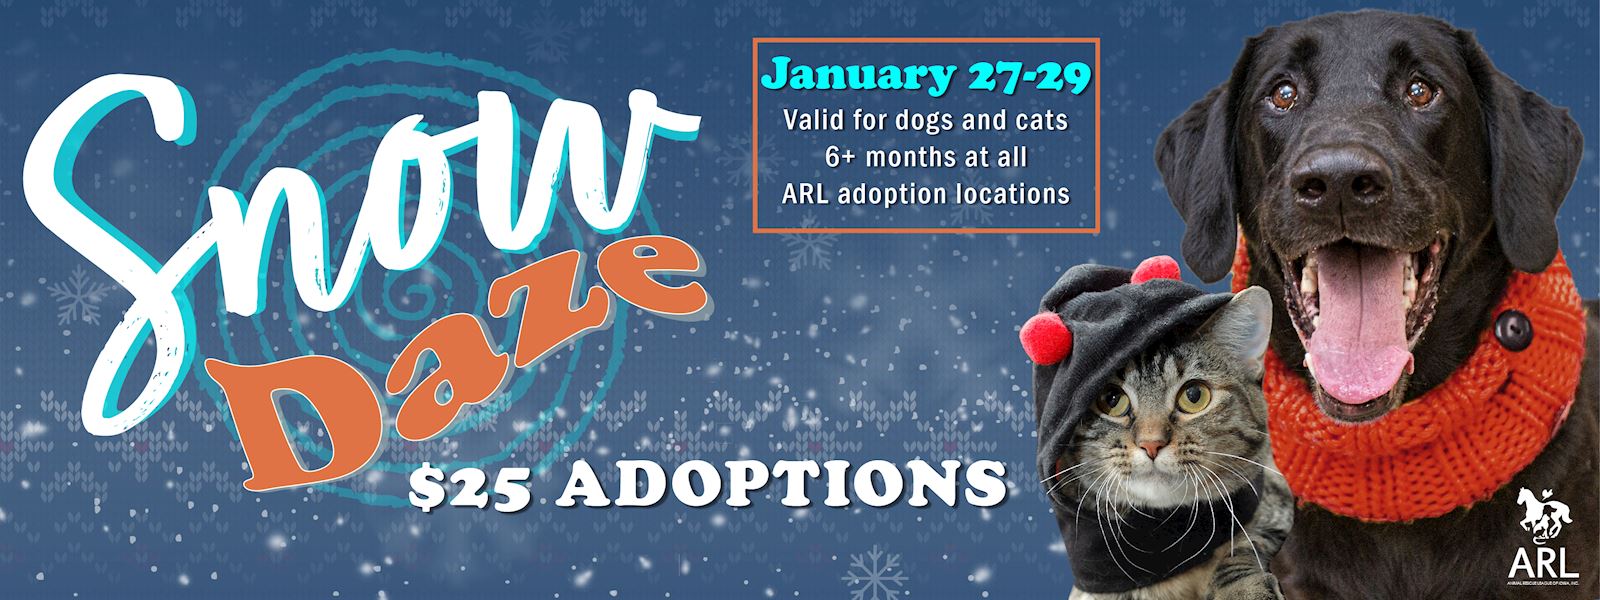 Snow Daze Adoption Event